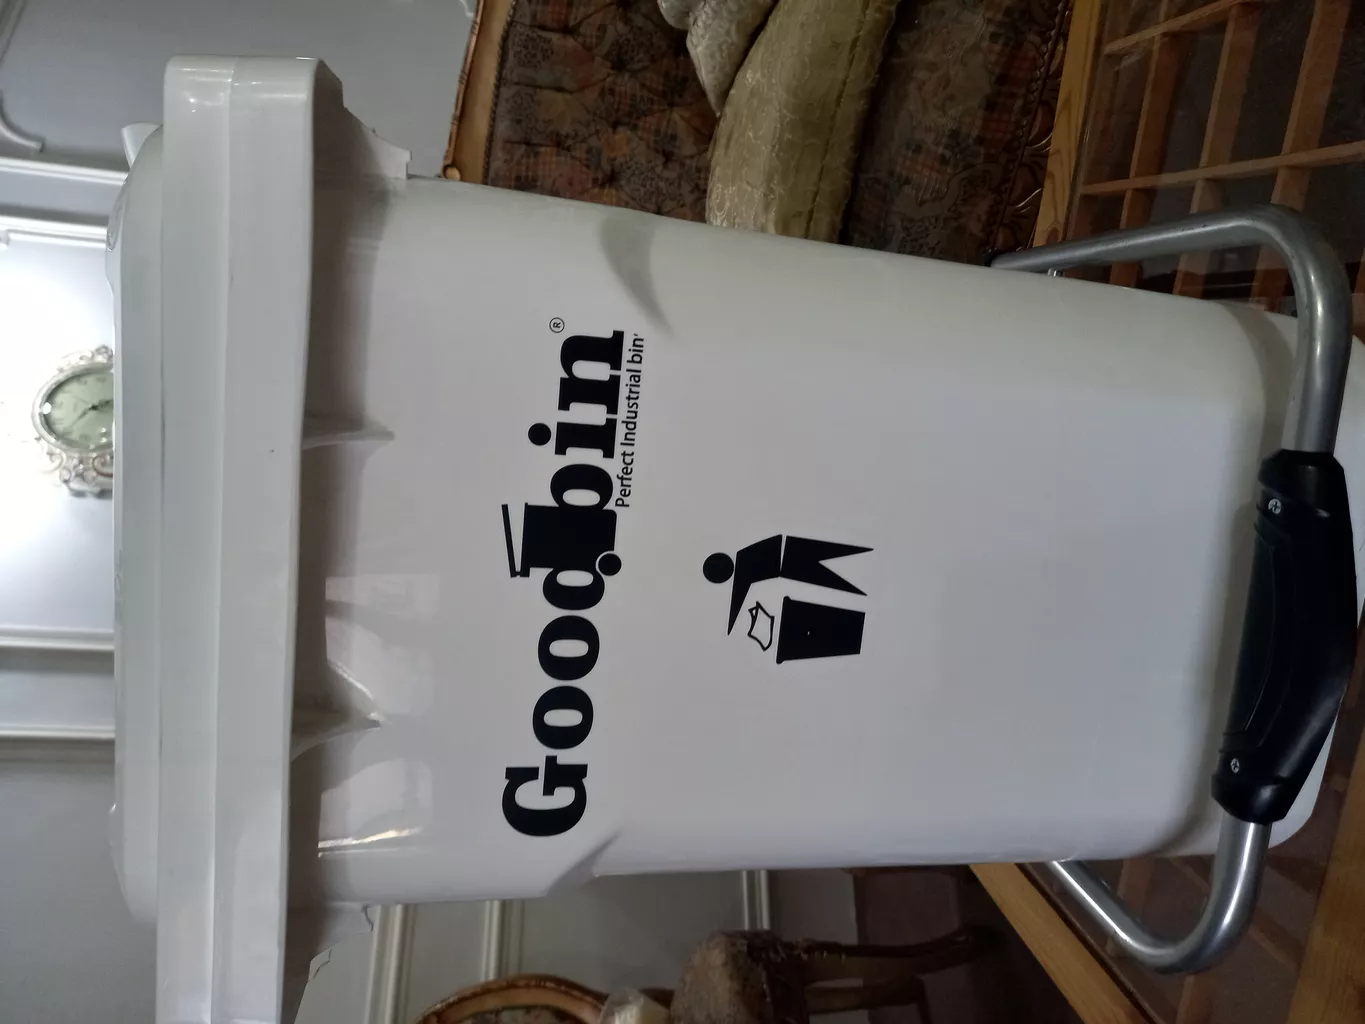 سطل زباله پدالی مدل Goodbin ظرفیت 60 لیتر